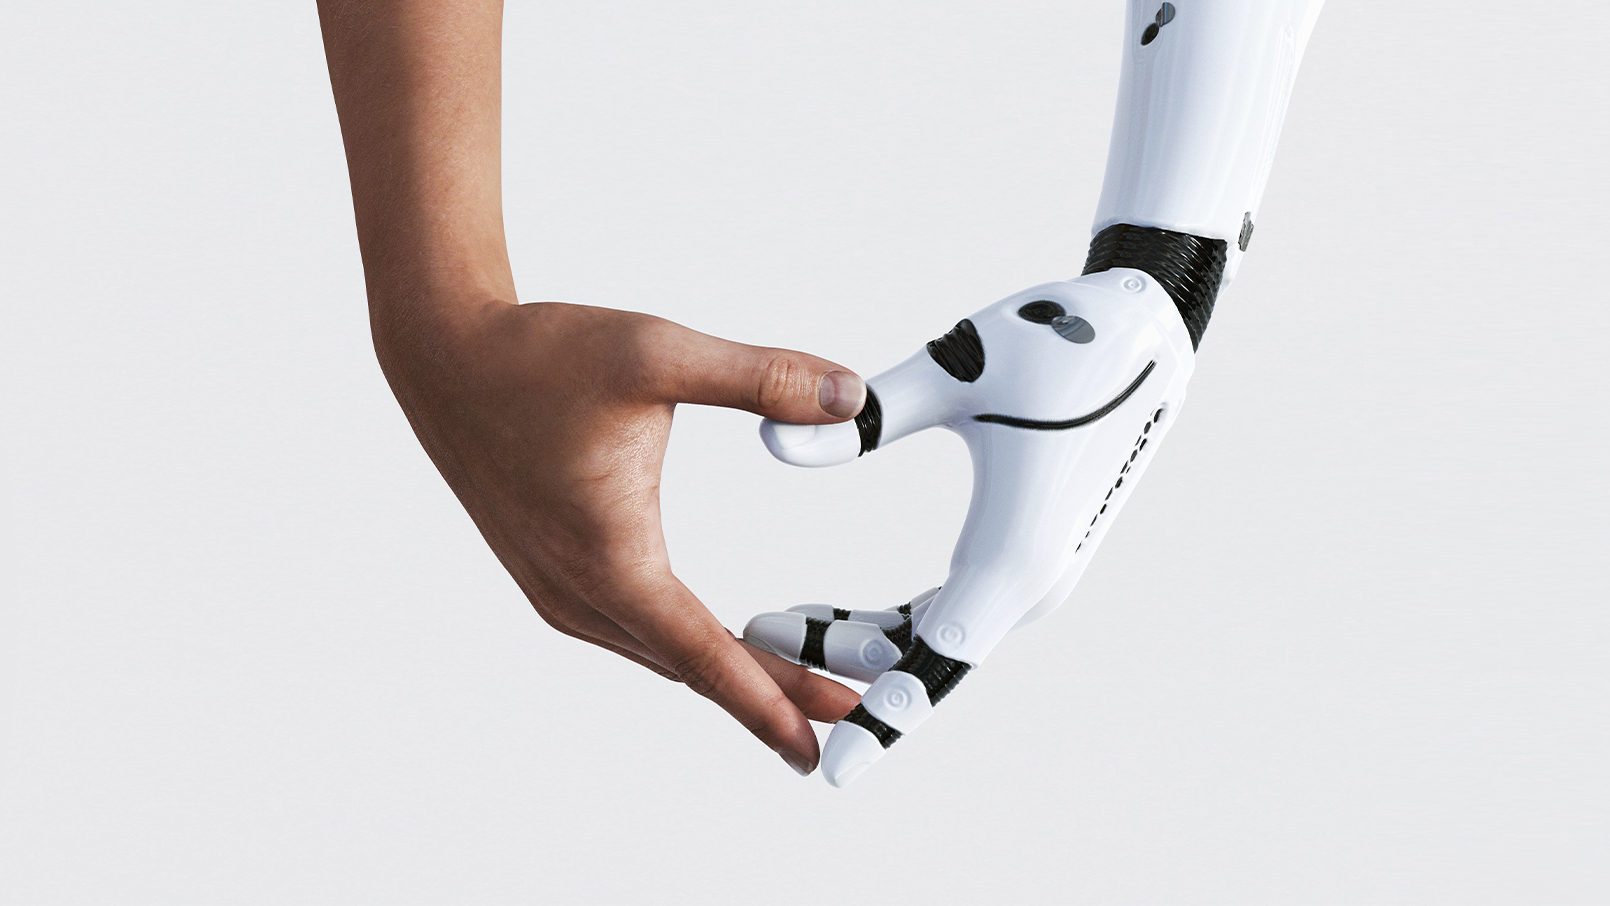 Mains robotique et humaine qui se rejoignent, symbole d’accompagnement et technologie